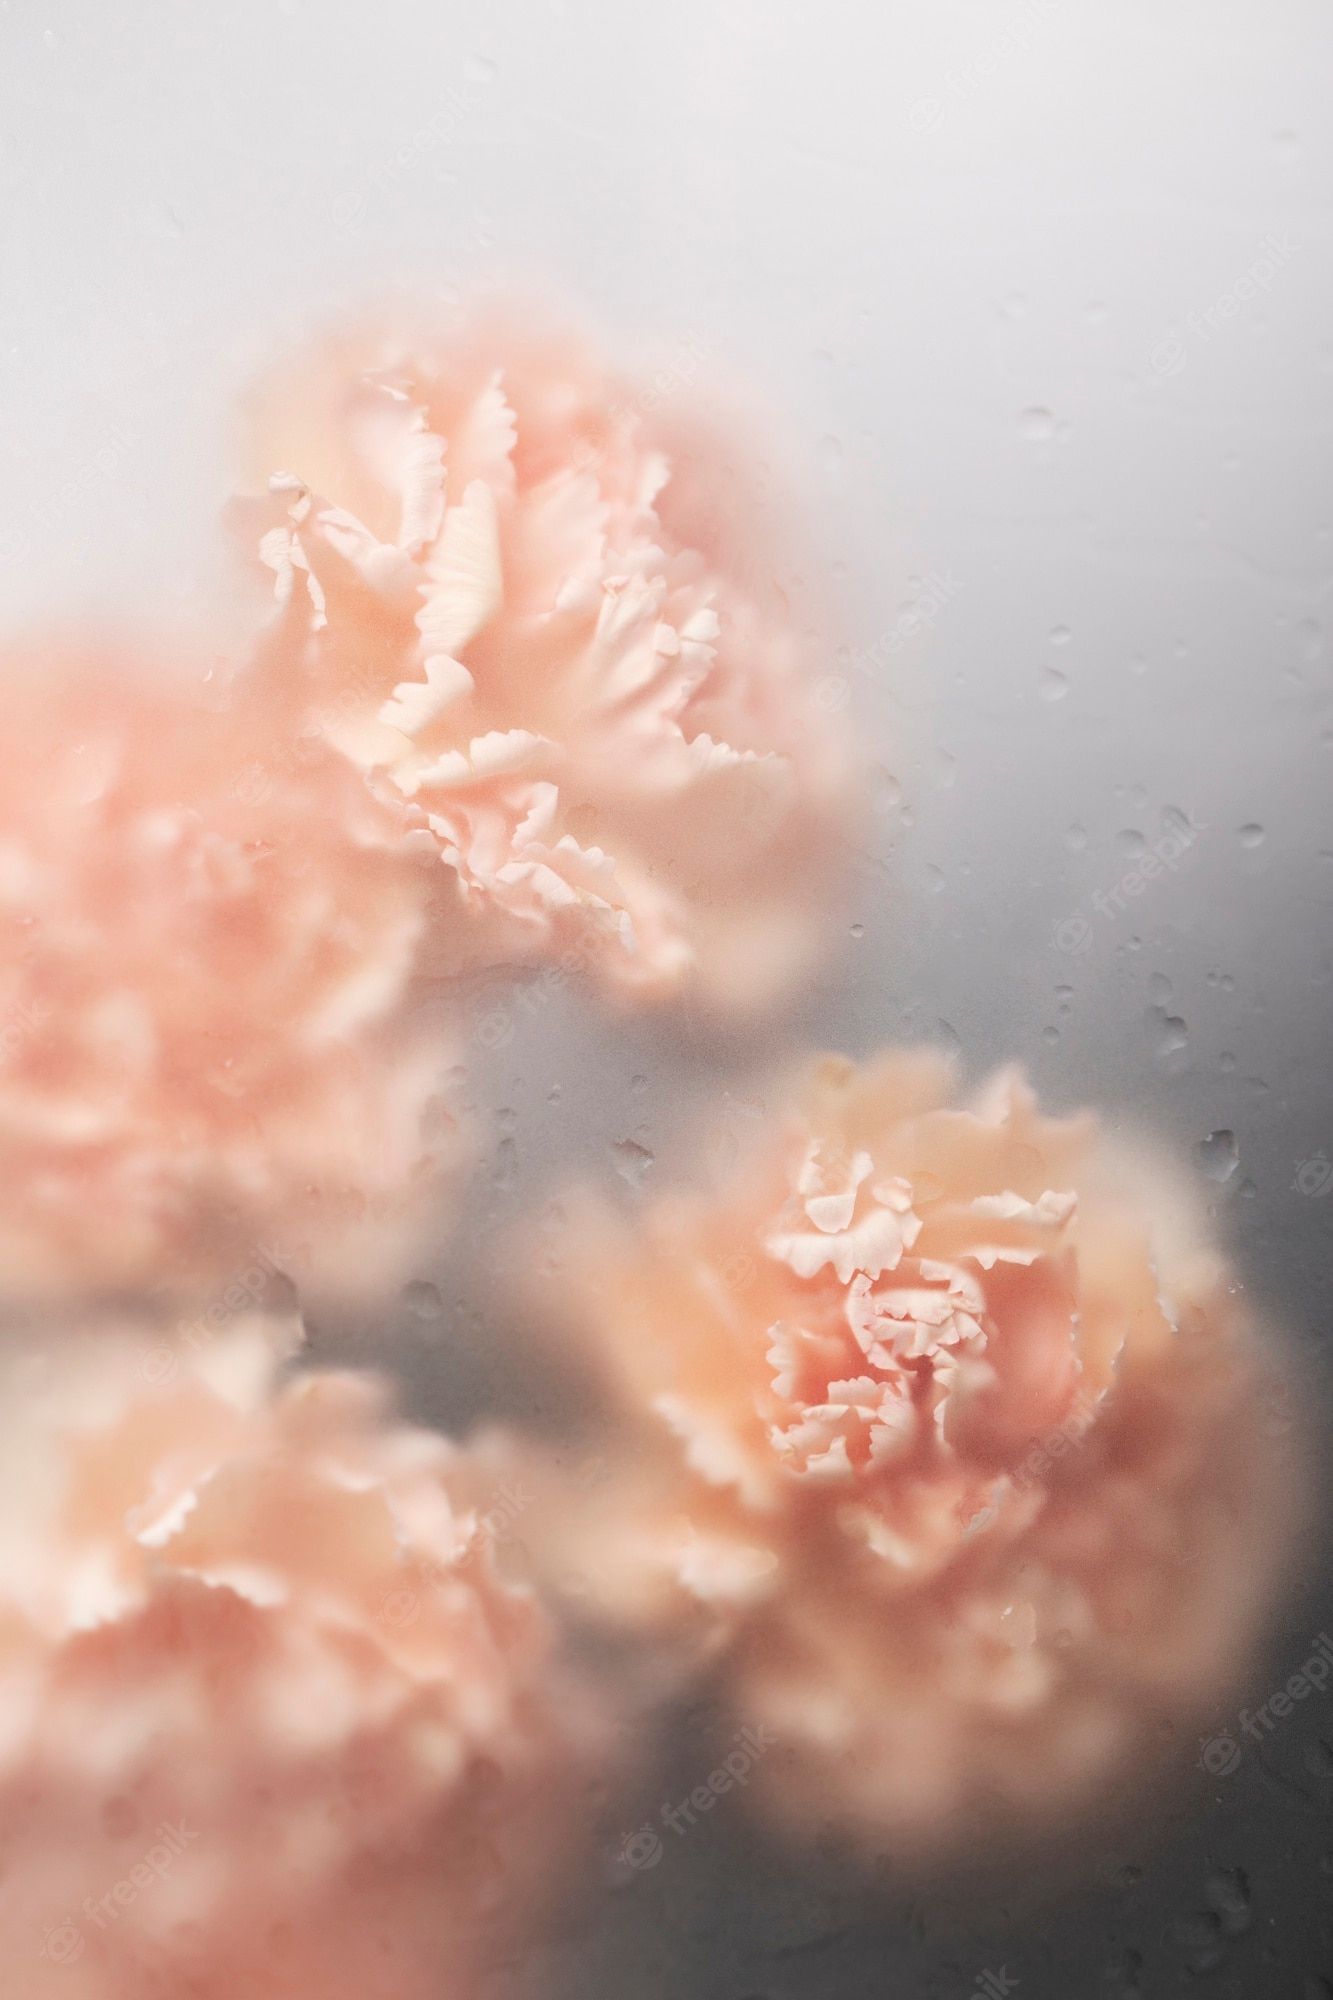 Pink carnations seen through a rainy window - Flower